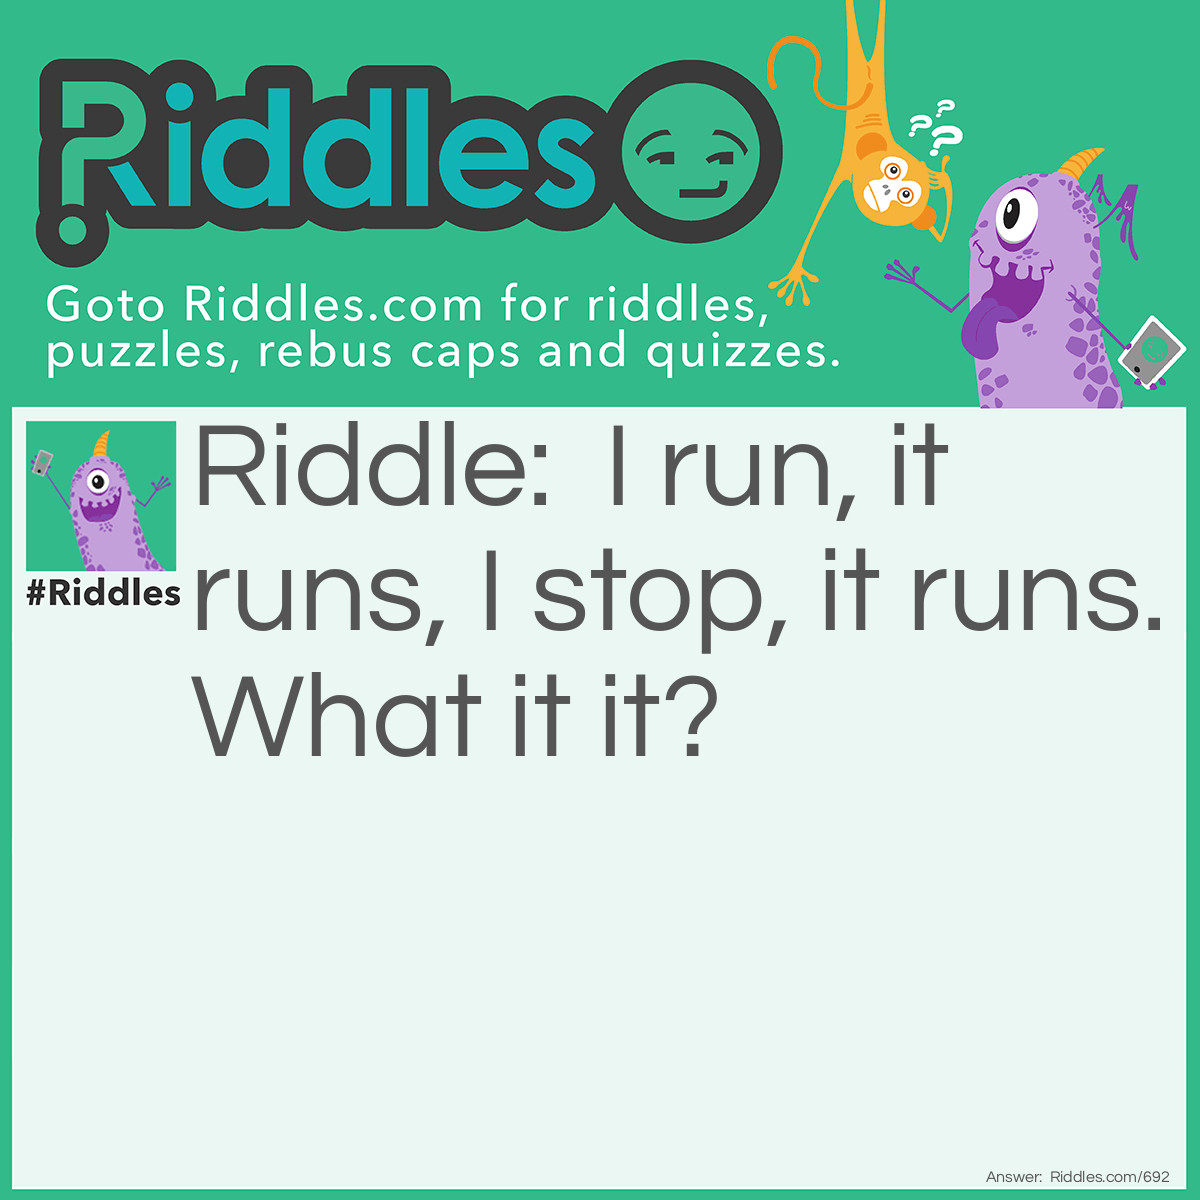 Riddle: I run, it runs, I stop, it runs
What it it?  Answer: My watch.